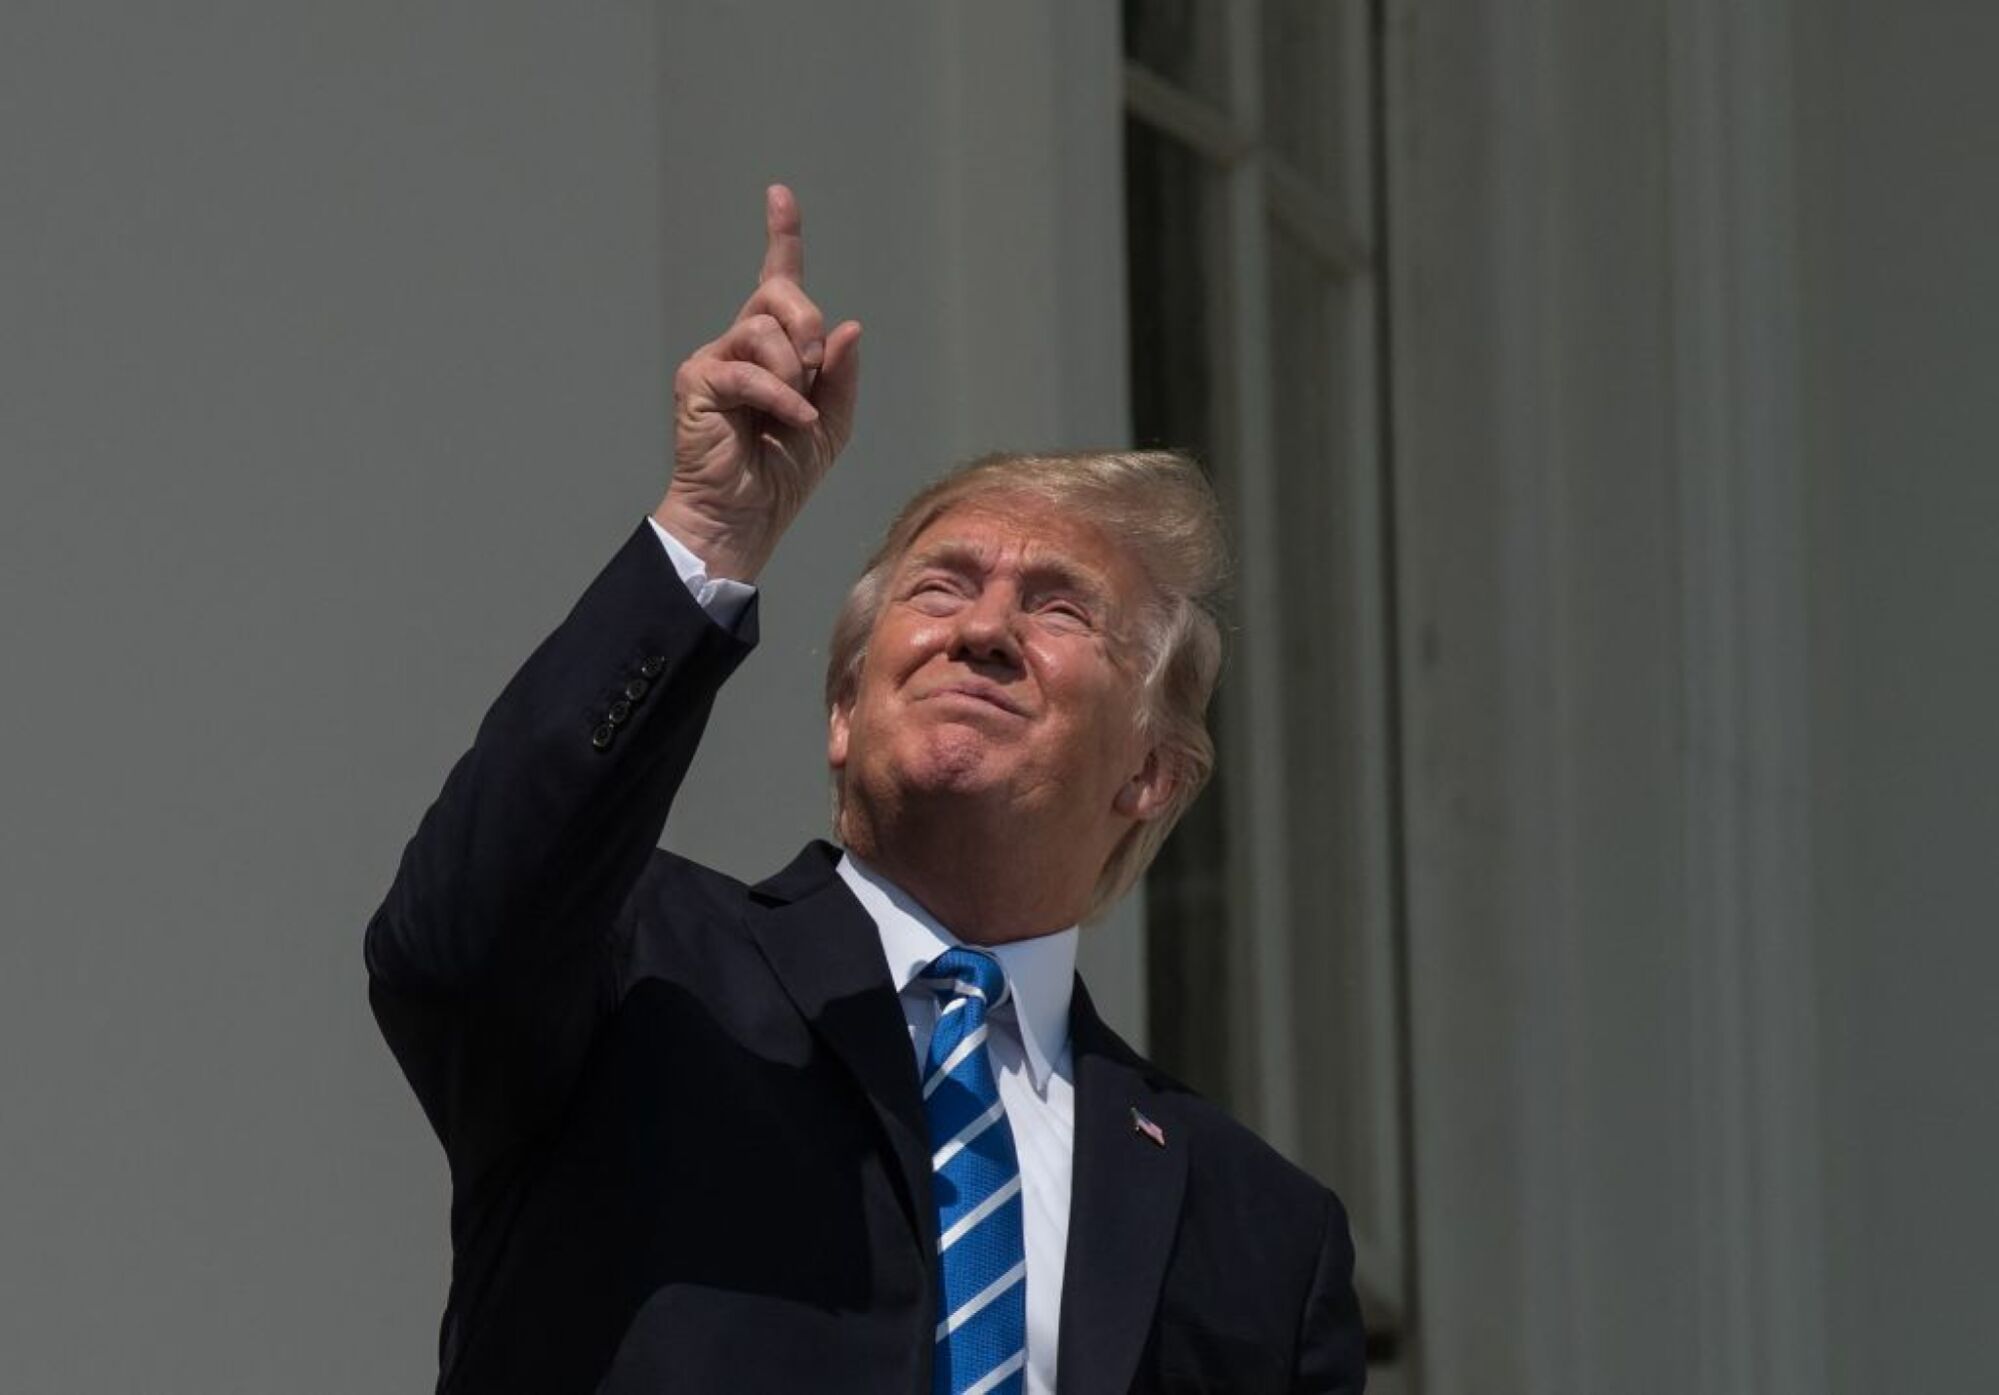 L'ancien président Donald Trump regarde le soleil à l'œil nu